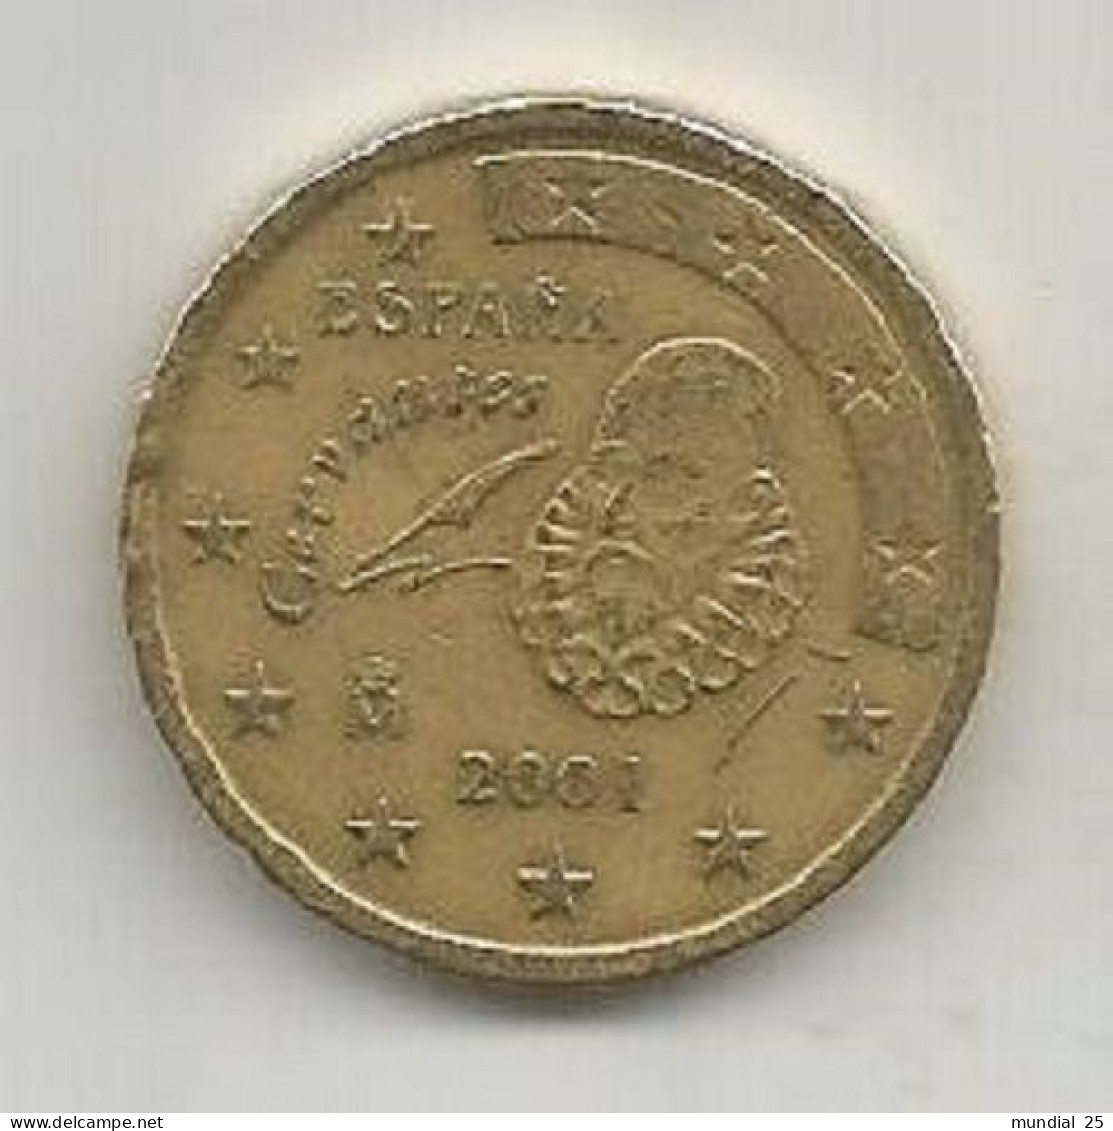 SPAIN 50 EURO CENT 2001 M - España